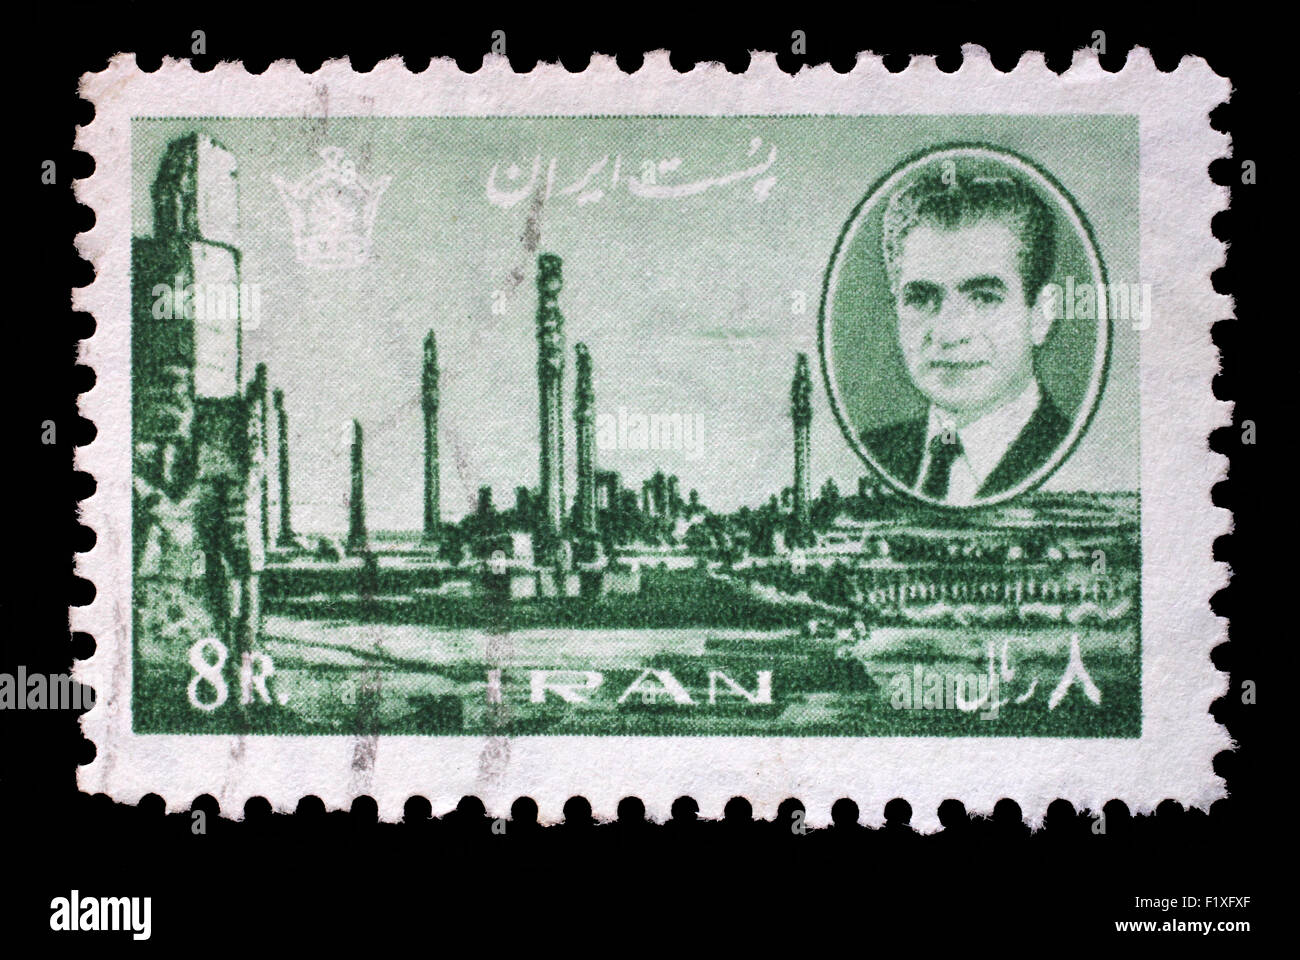 Timbres en Iran montre Shah Mohammad Reza Pahlavi, sur fond de ruines de Persépolis, vers 1966 Banque D'Images